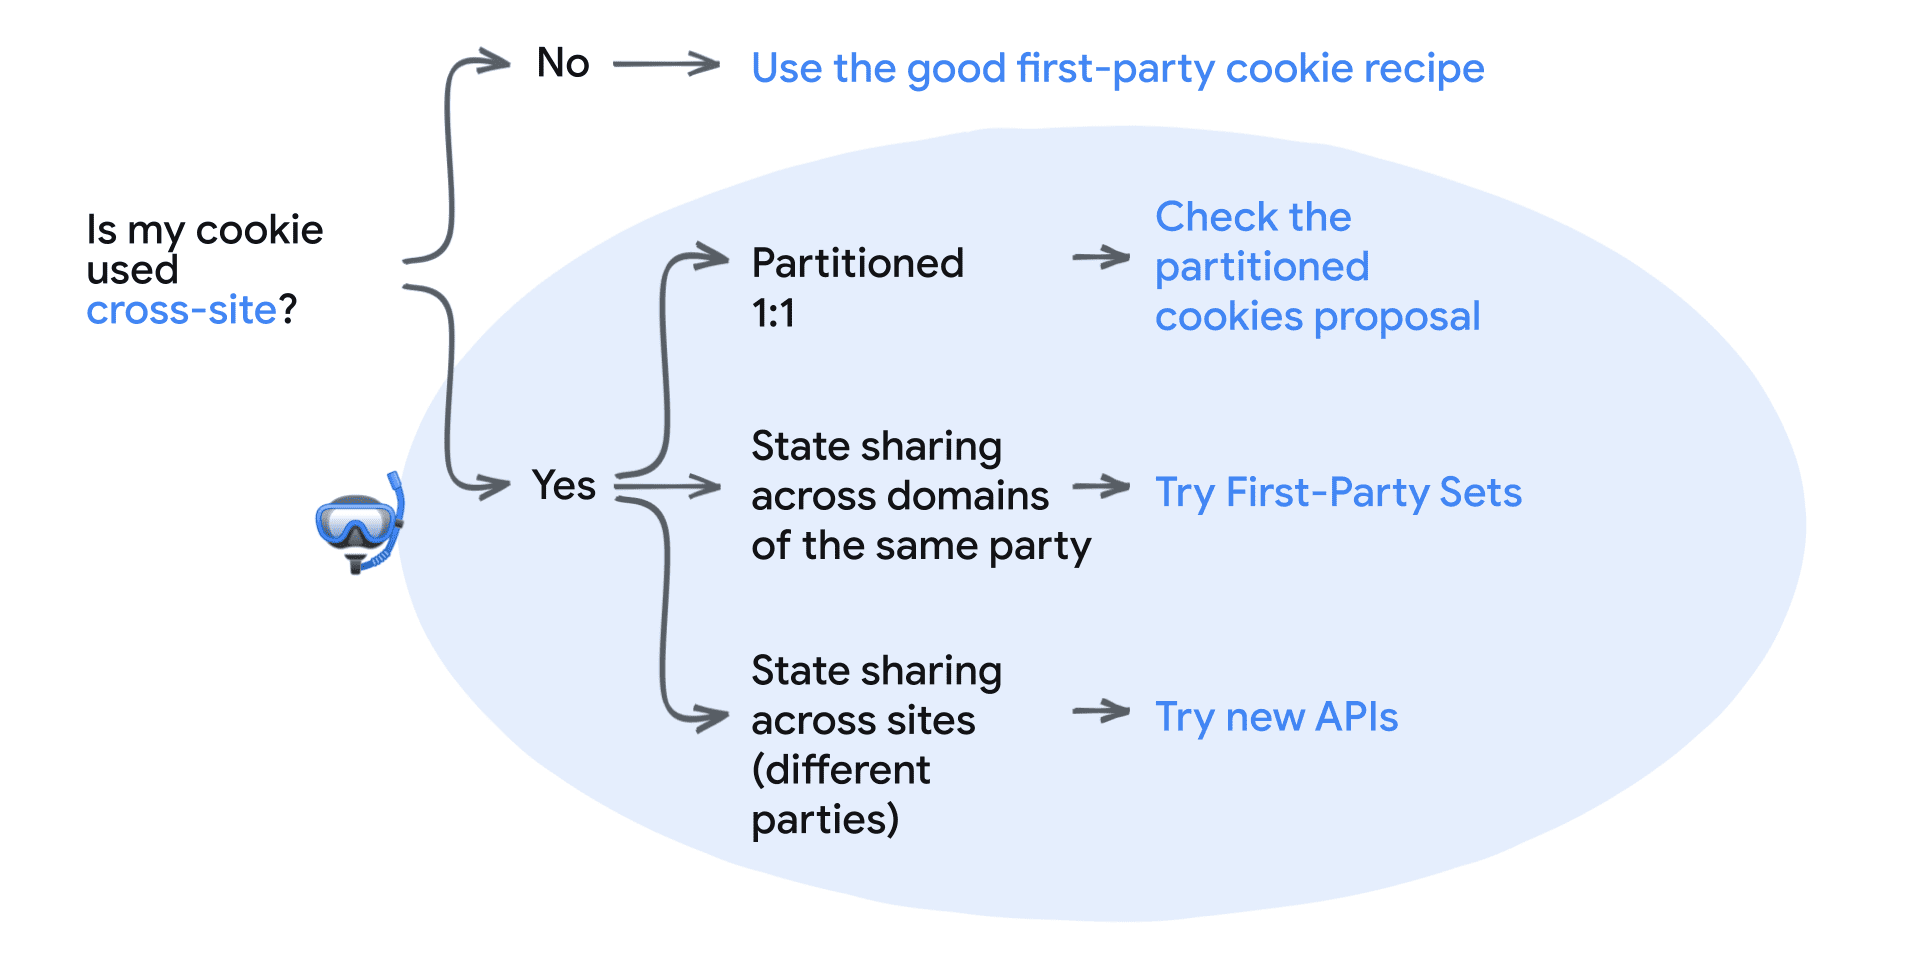 我的 Cookie 是否用於跨網站？否：使用好的第一方 Cookie 方案。是：分區 1:1 - 查看 CHIPS 提案、同一方跨網域分享狀態資訊 - 使用第一方集合、跨網站的狀態分享功能 (不同方) - 試用新的 API